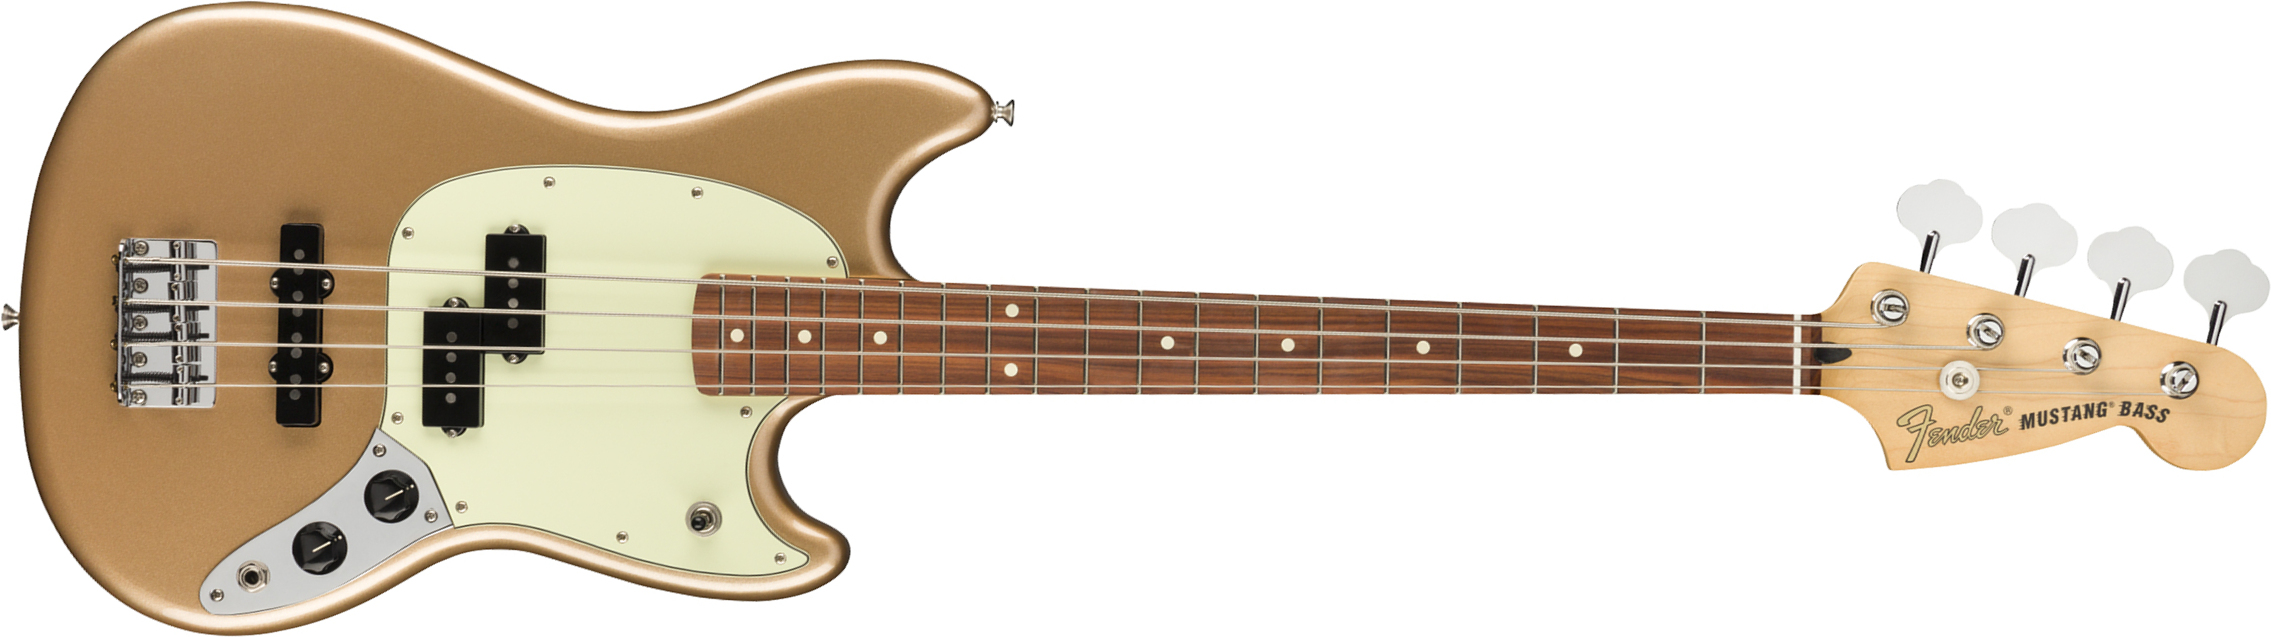 Fender Player Mustang Bass Mex Pf - Firemist Gold - E-Bass für Kinder - Main picture